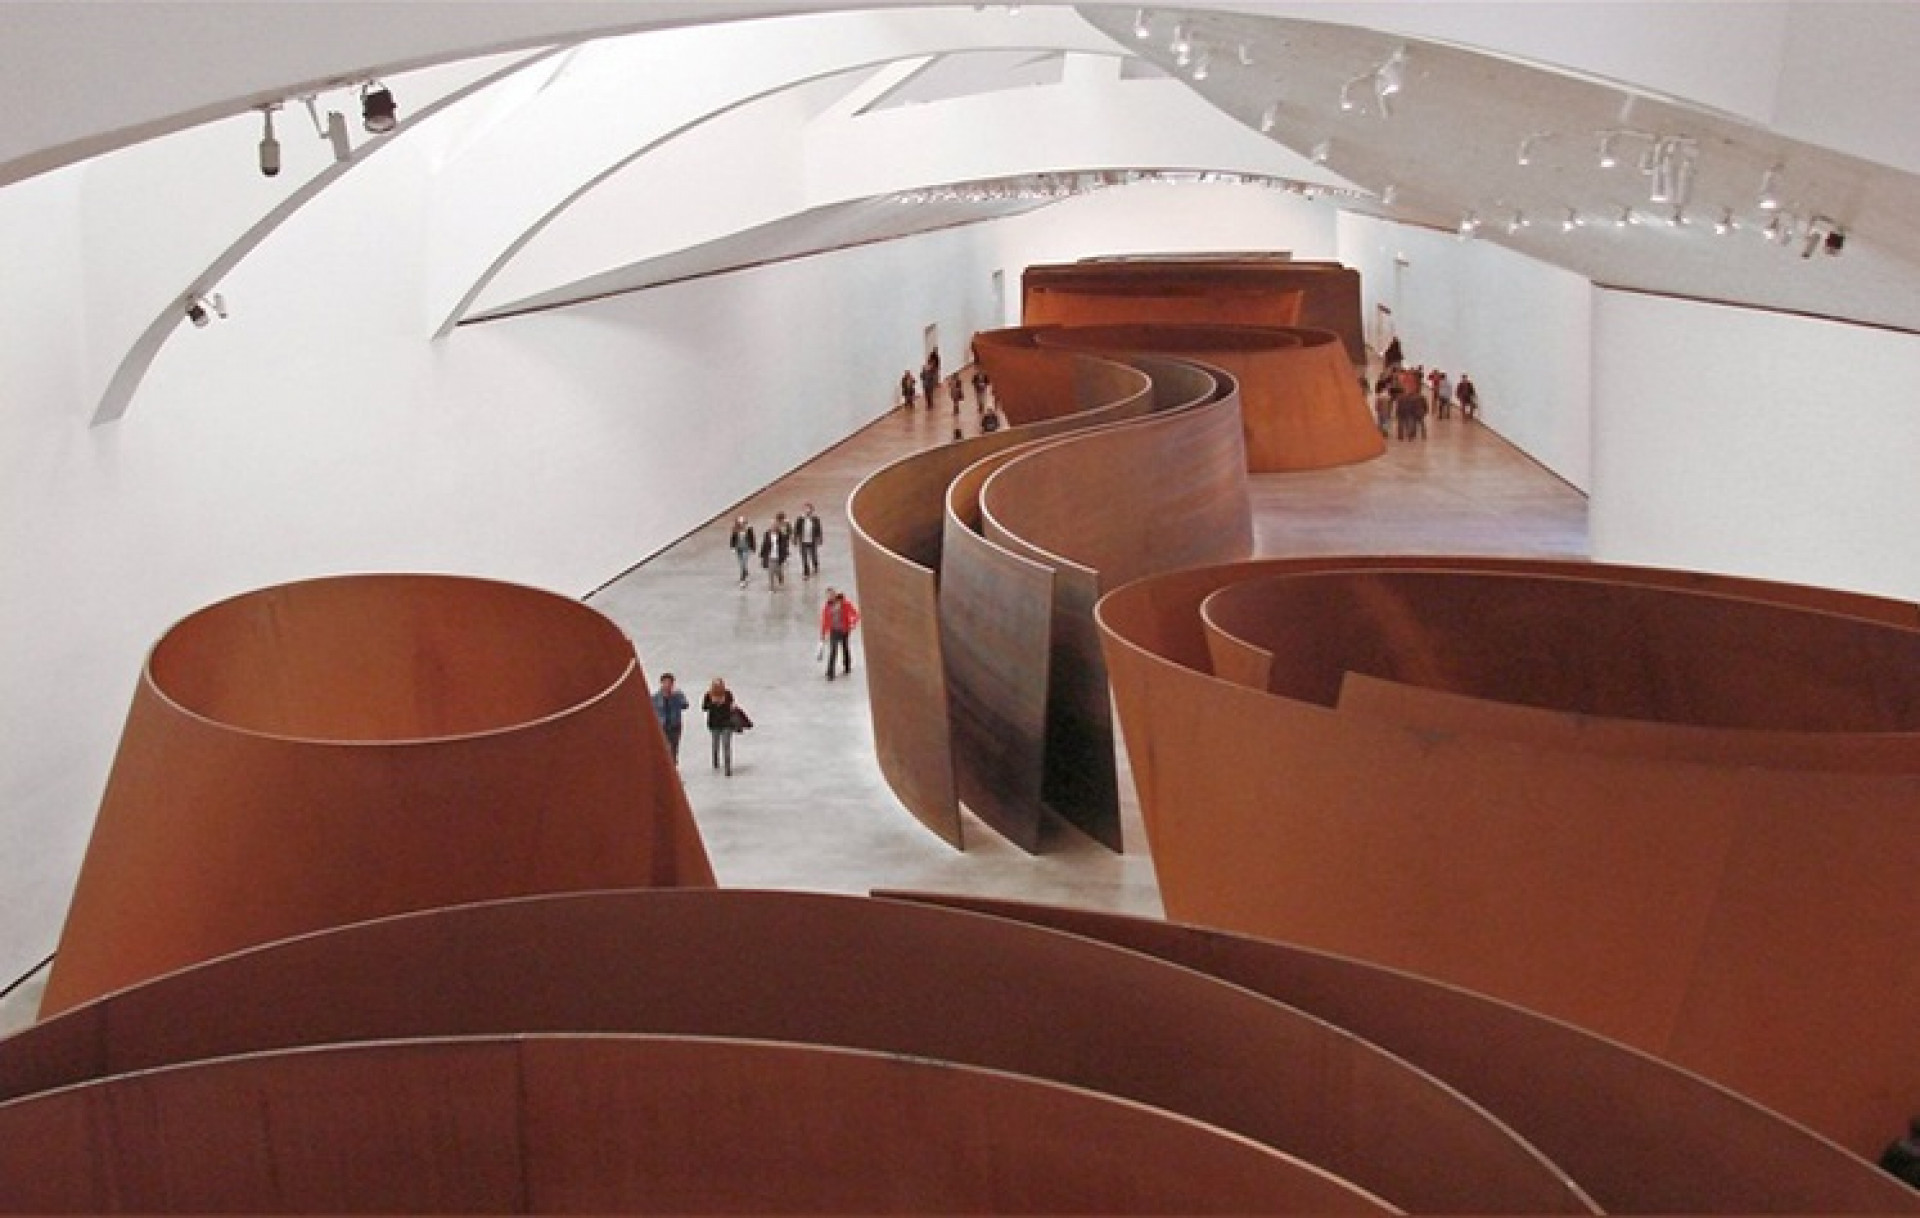 Richard Serra esculpia grandes obras metálicas - Reprodução